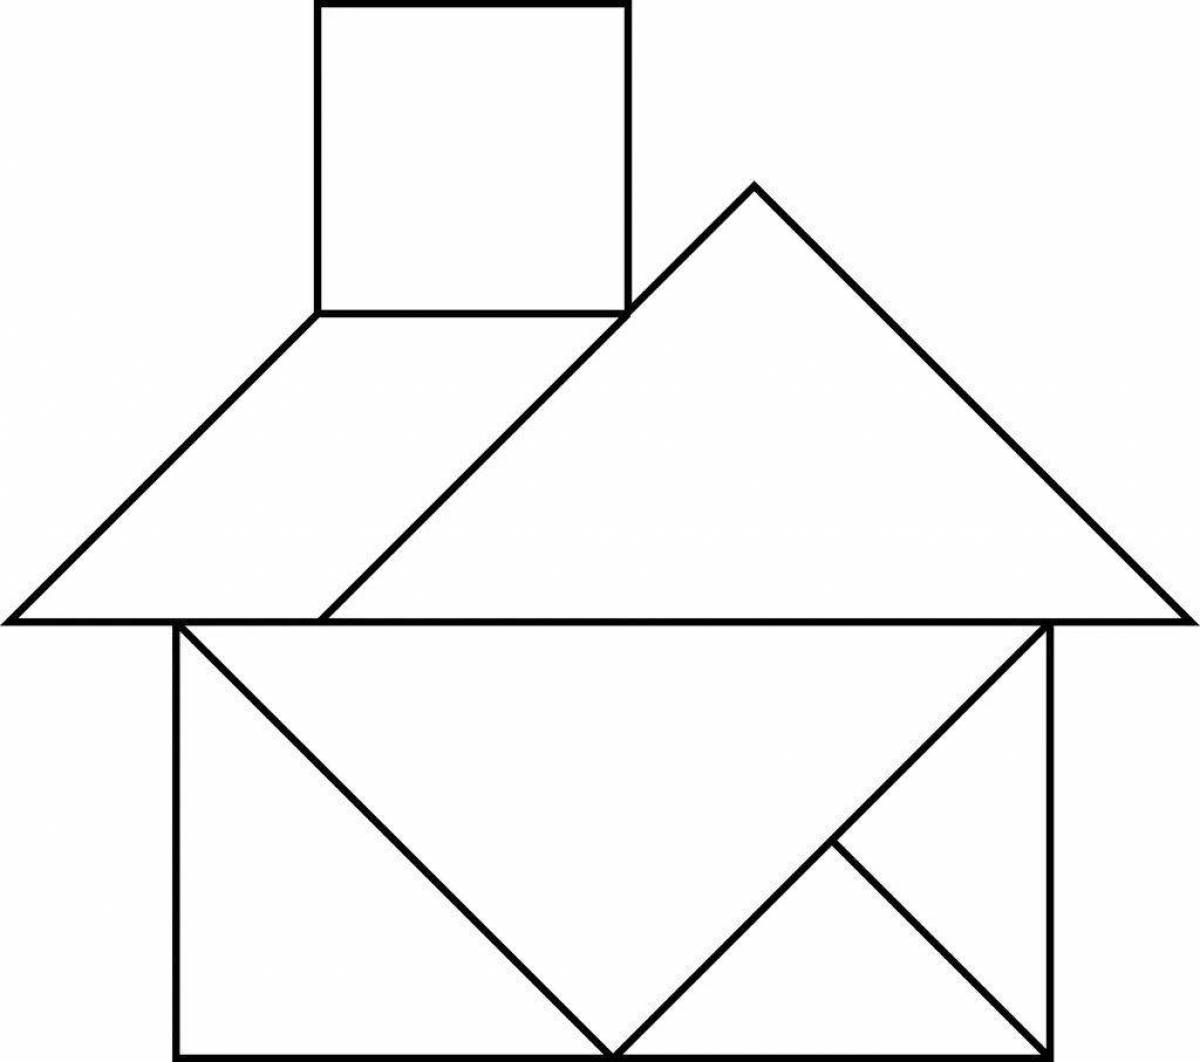 Рисунок состоящий из геометрических фигур